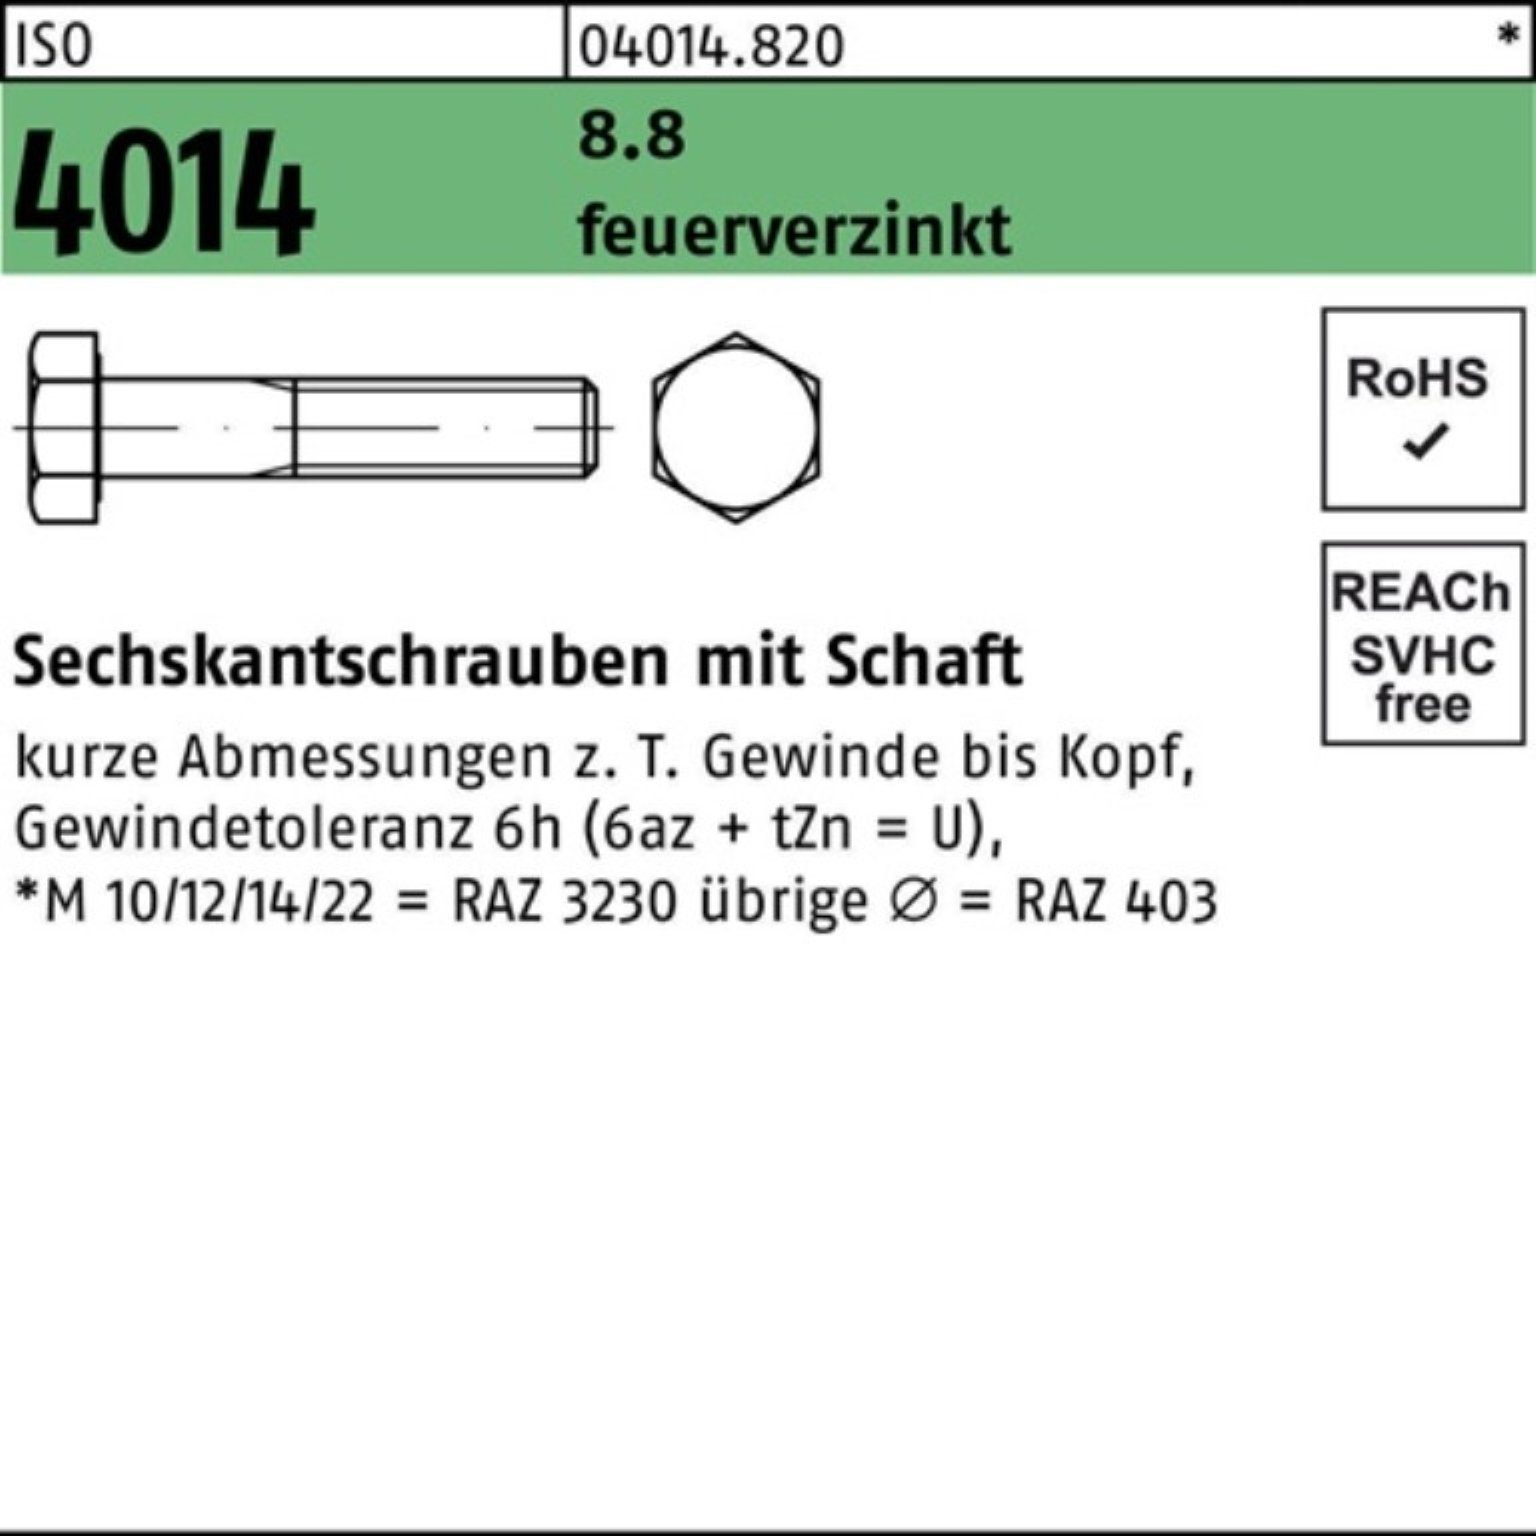 Bufab Sechskantschraube 100er Pack Sechskantschraube ISO 4014 Schaft M33x 180 8.8 feuerverz. 1